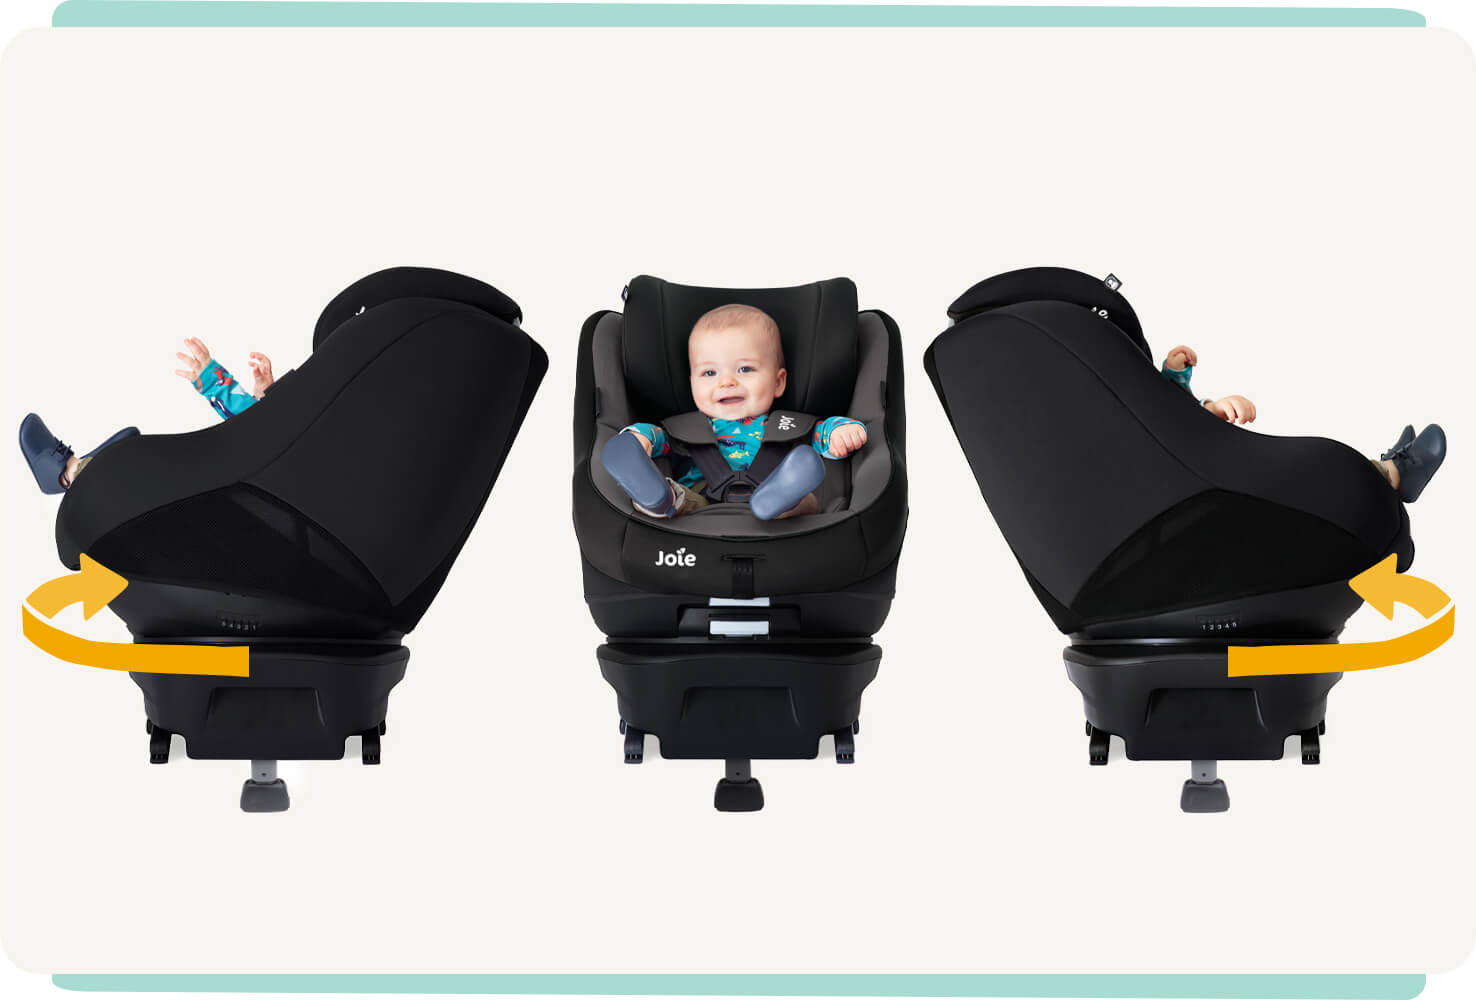  Joie spin 360 Autokindersitz in Grau und Schwarz, drei Bilder mit Baby, Drehung nach links und rechts. 